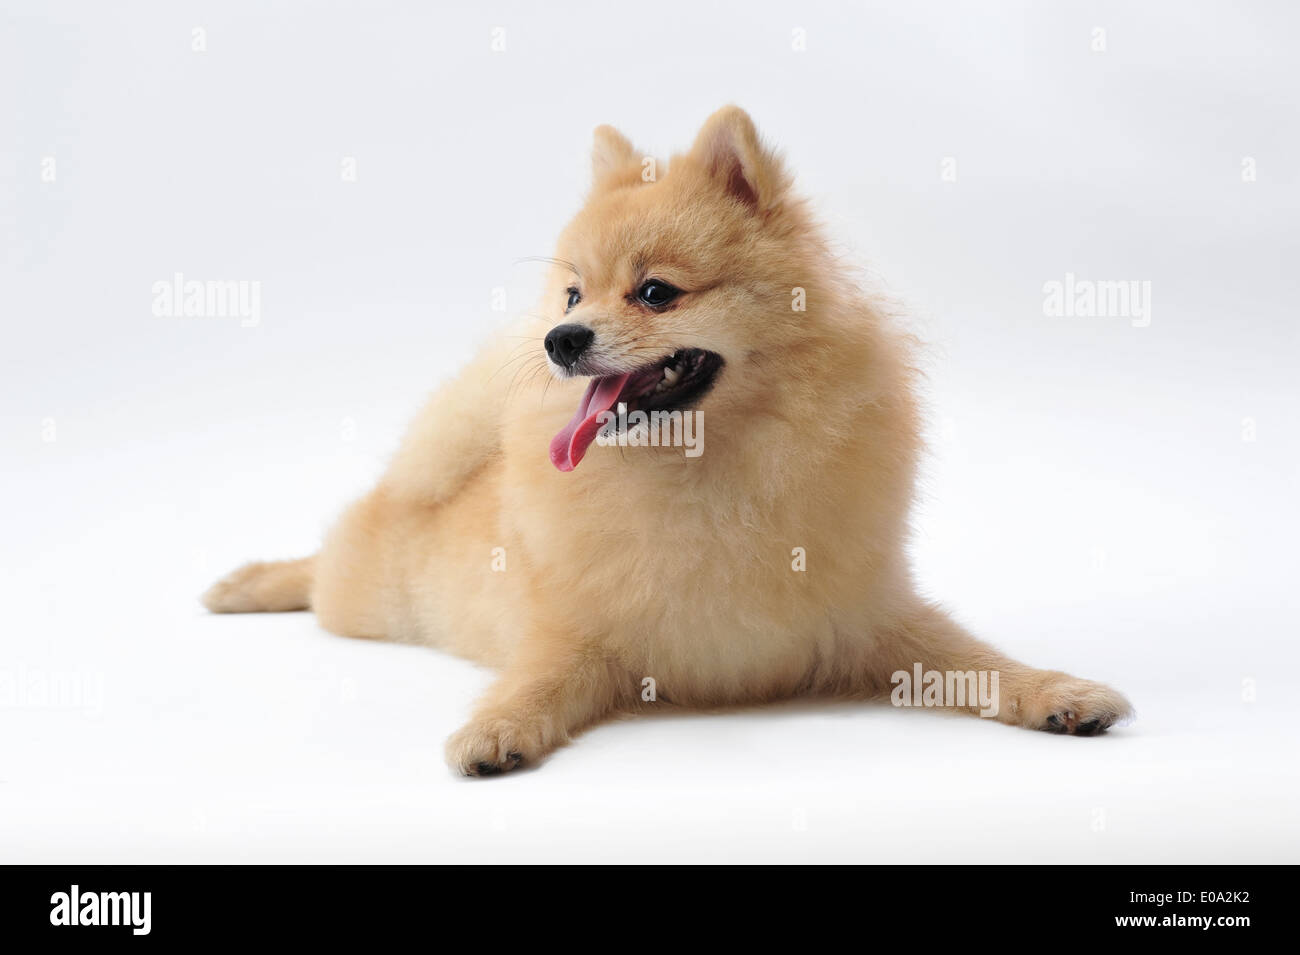 Pomeranian isolated on white Stock Photo